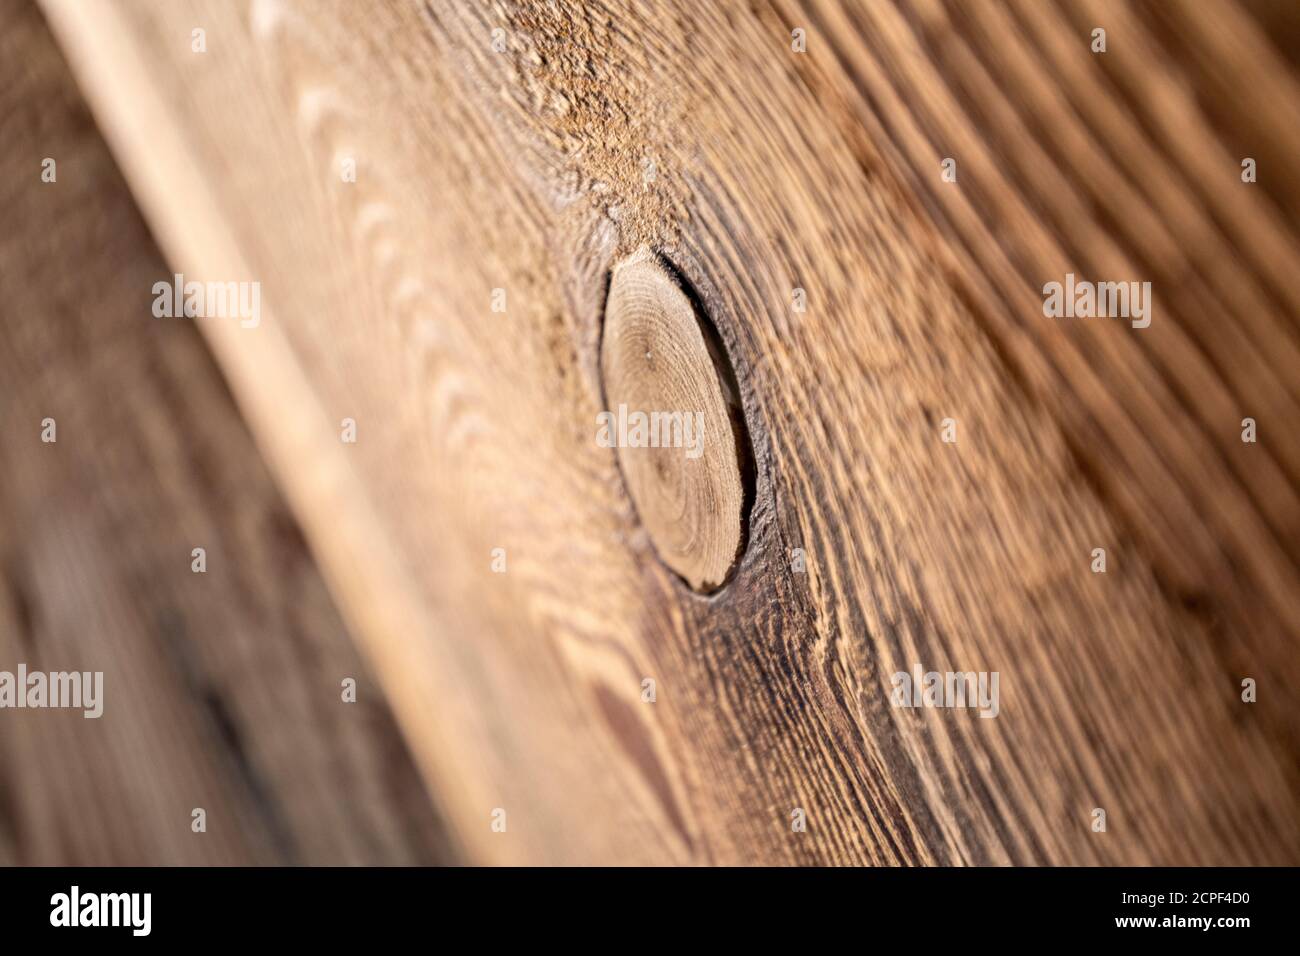 planches en bois brossé avec nervures, matière première, nuances de brun Banque D'Images